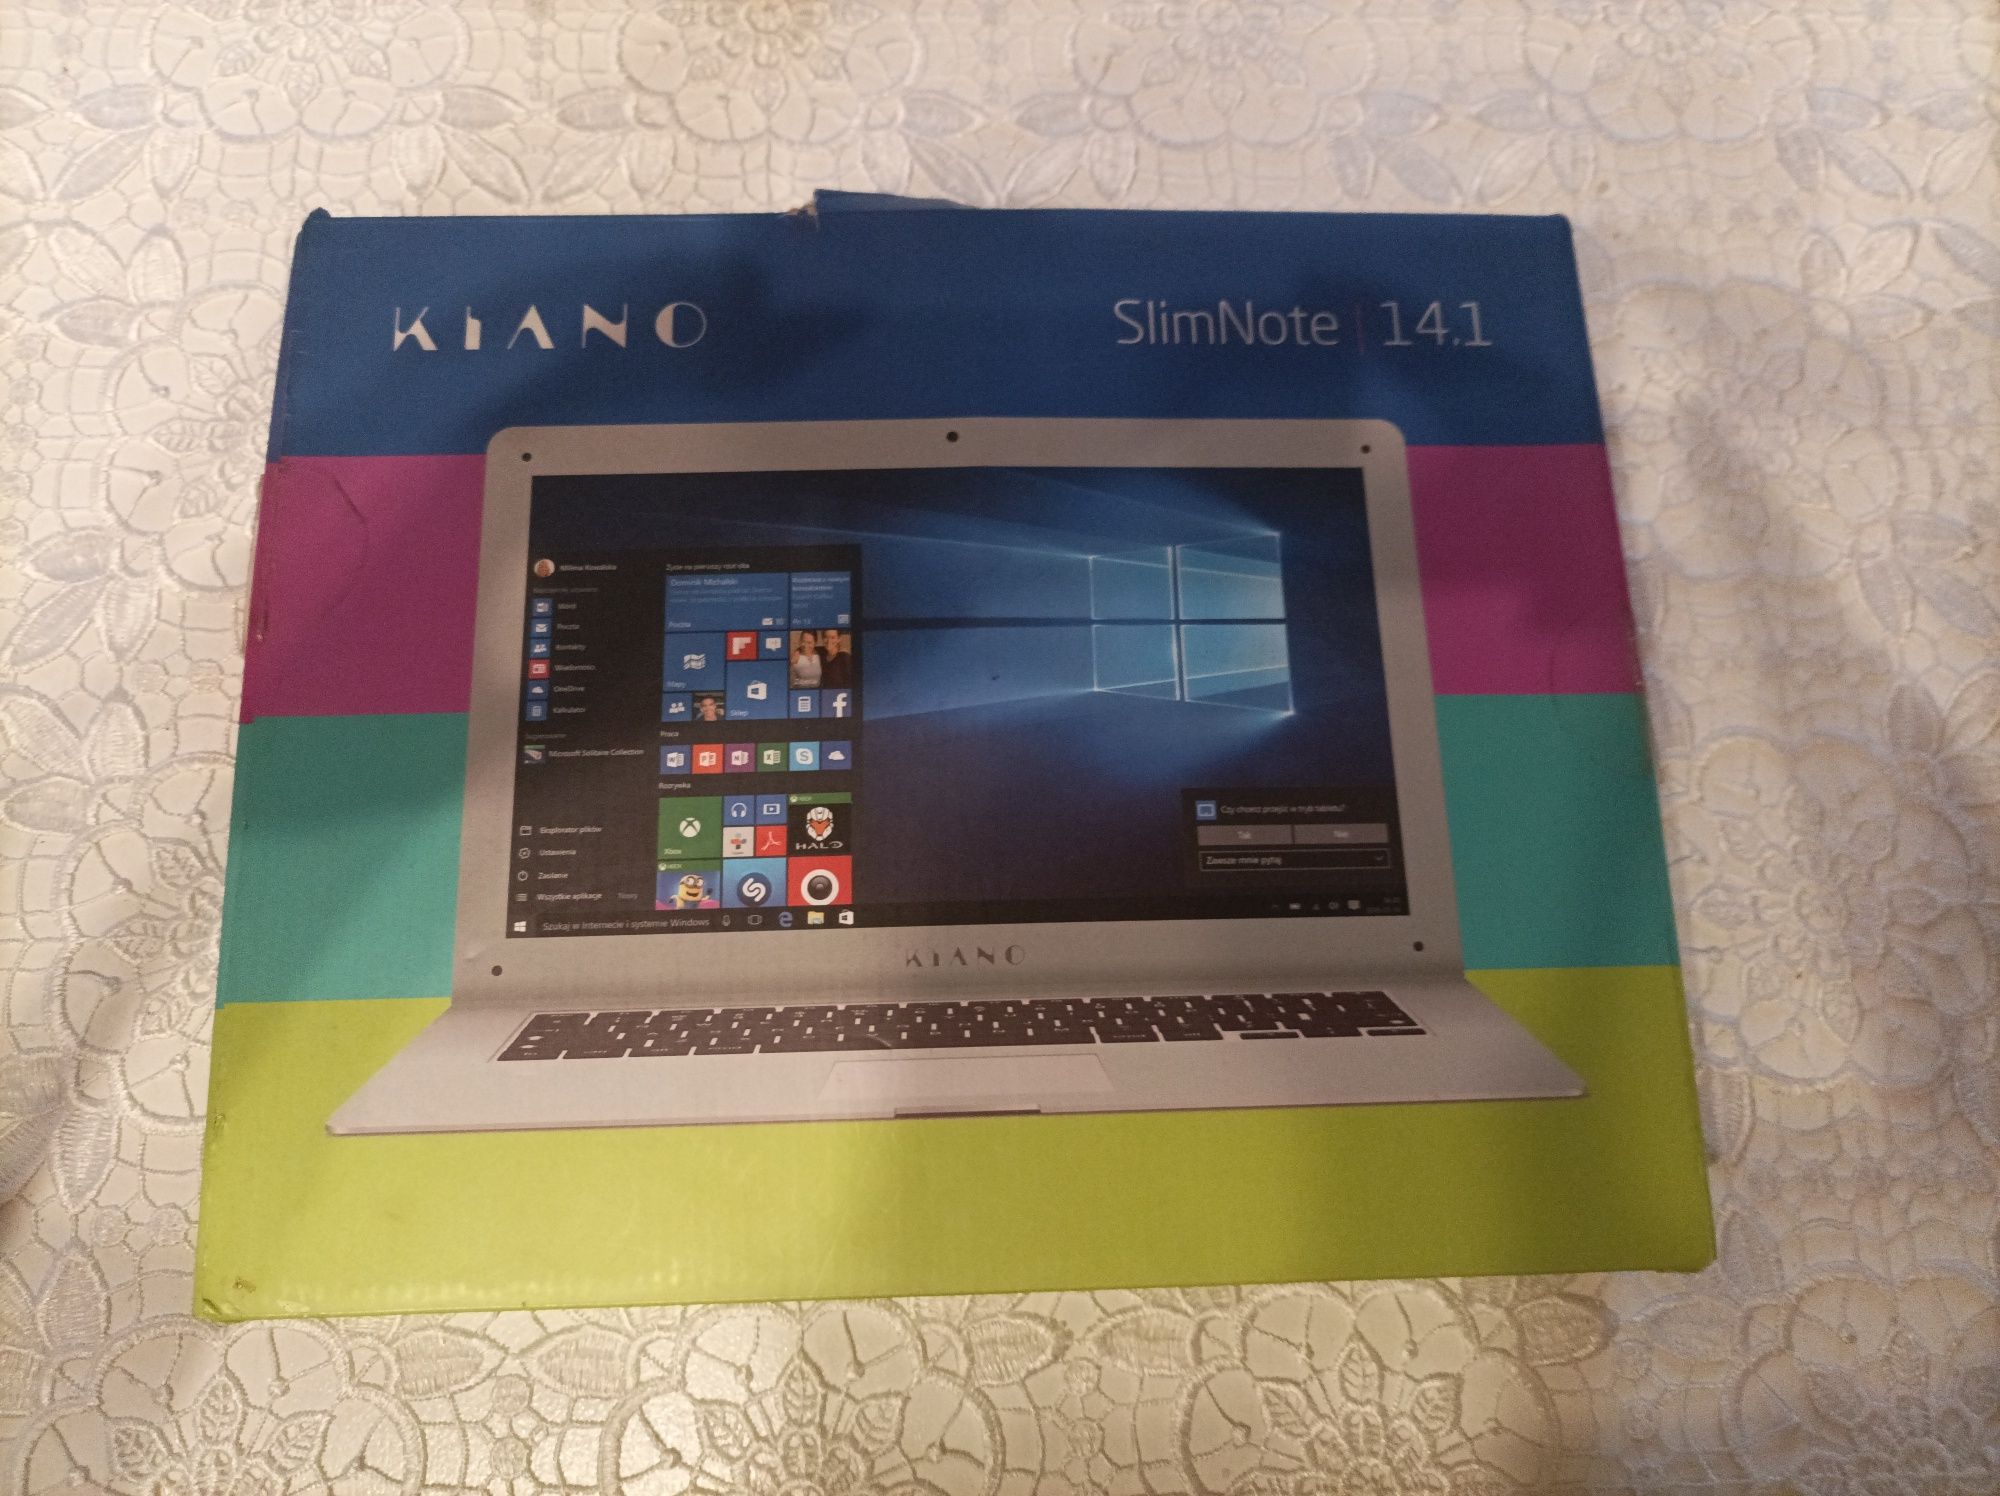 Sprzedam laptop Kiano SlimNote  14.1 uszkodzenia karta graficzna